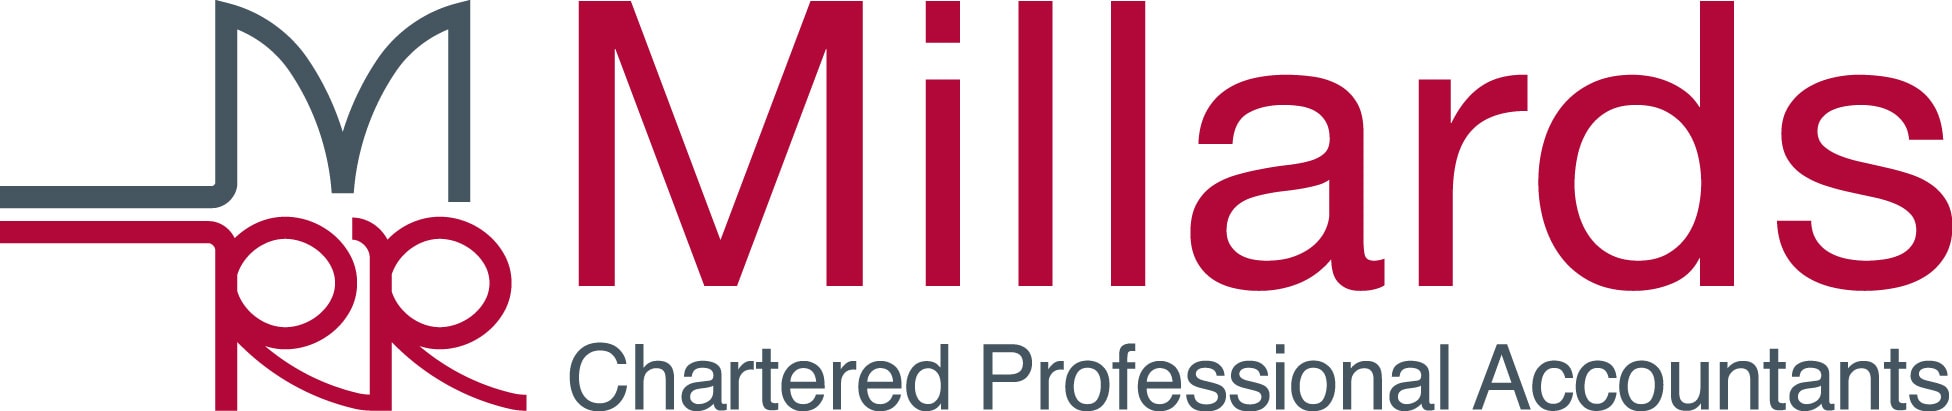 Millards logo.